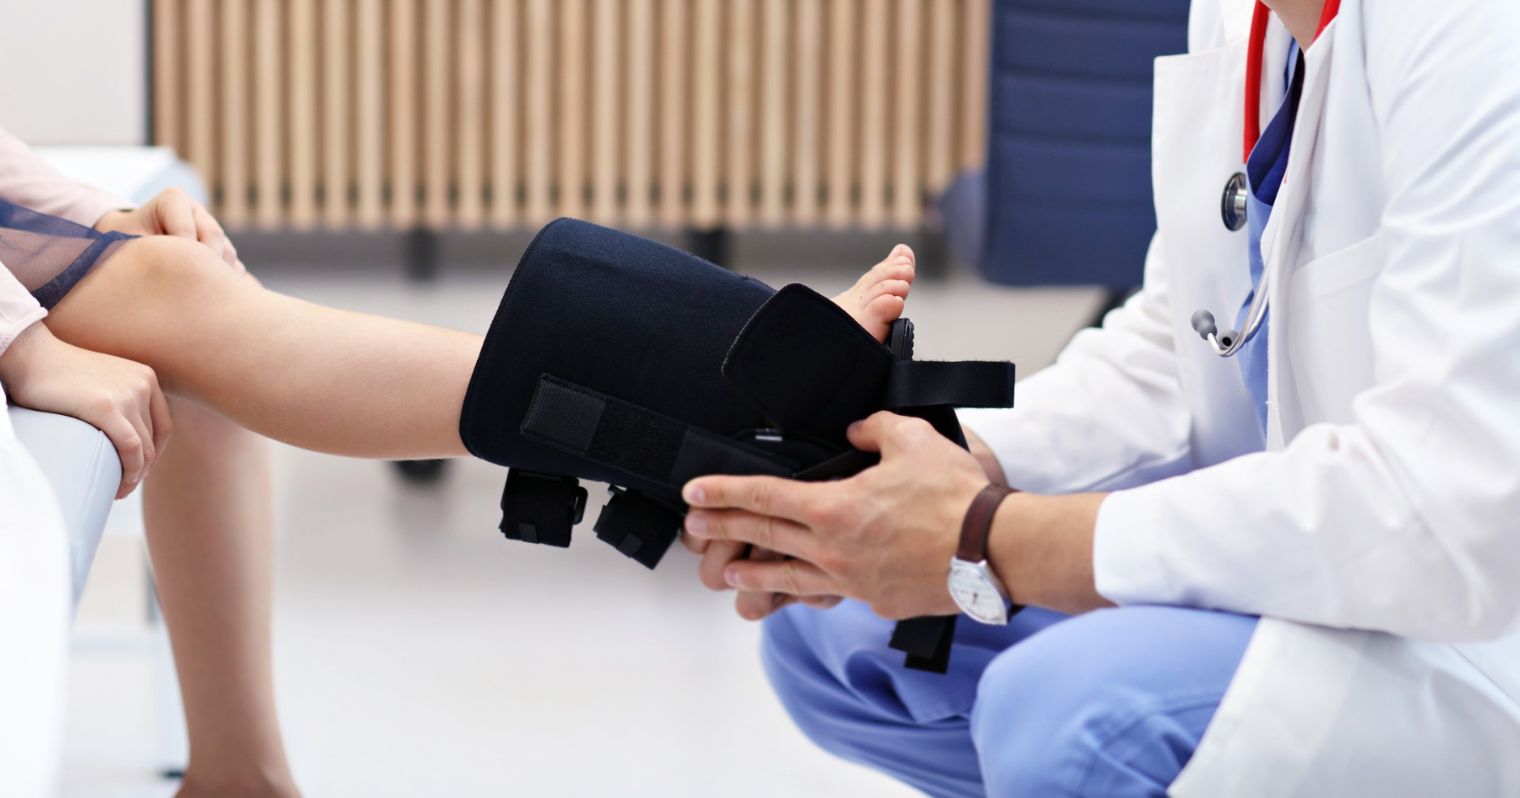 Ortopédiai műszerész tesz fel egy rögzítőt egy kislány lábára.